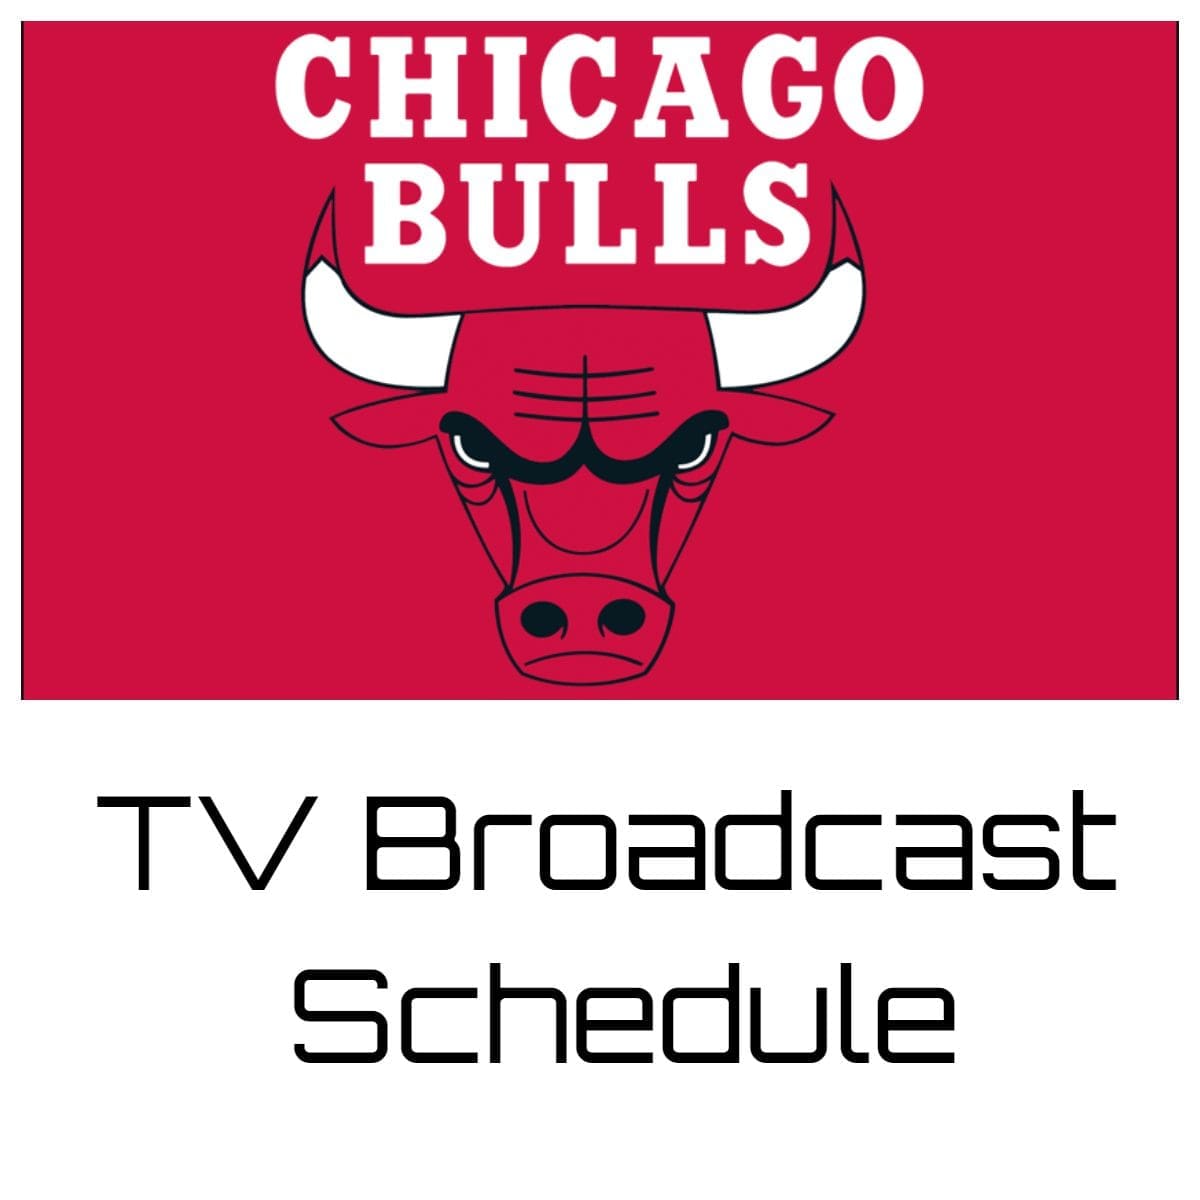 Chicago Bulls TV Broadcast Schedule